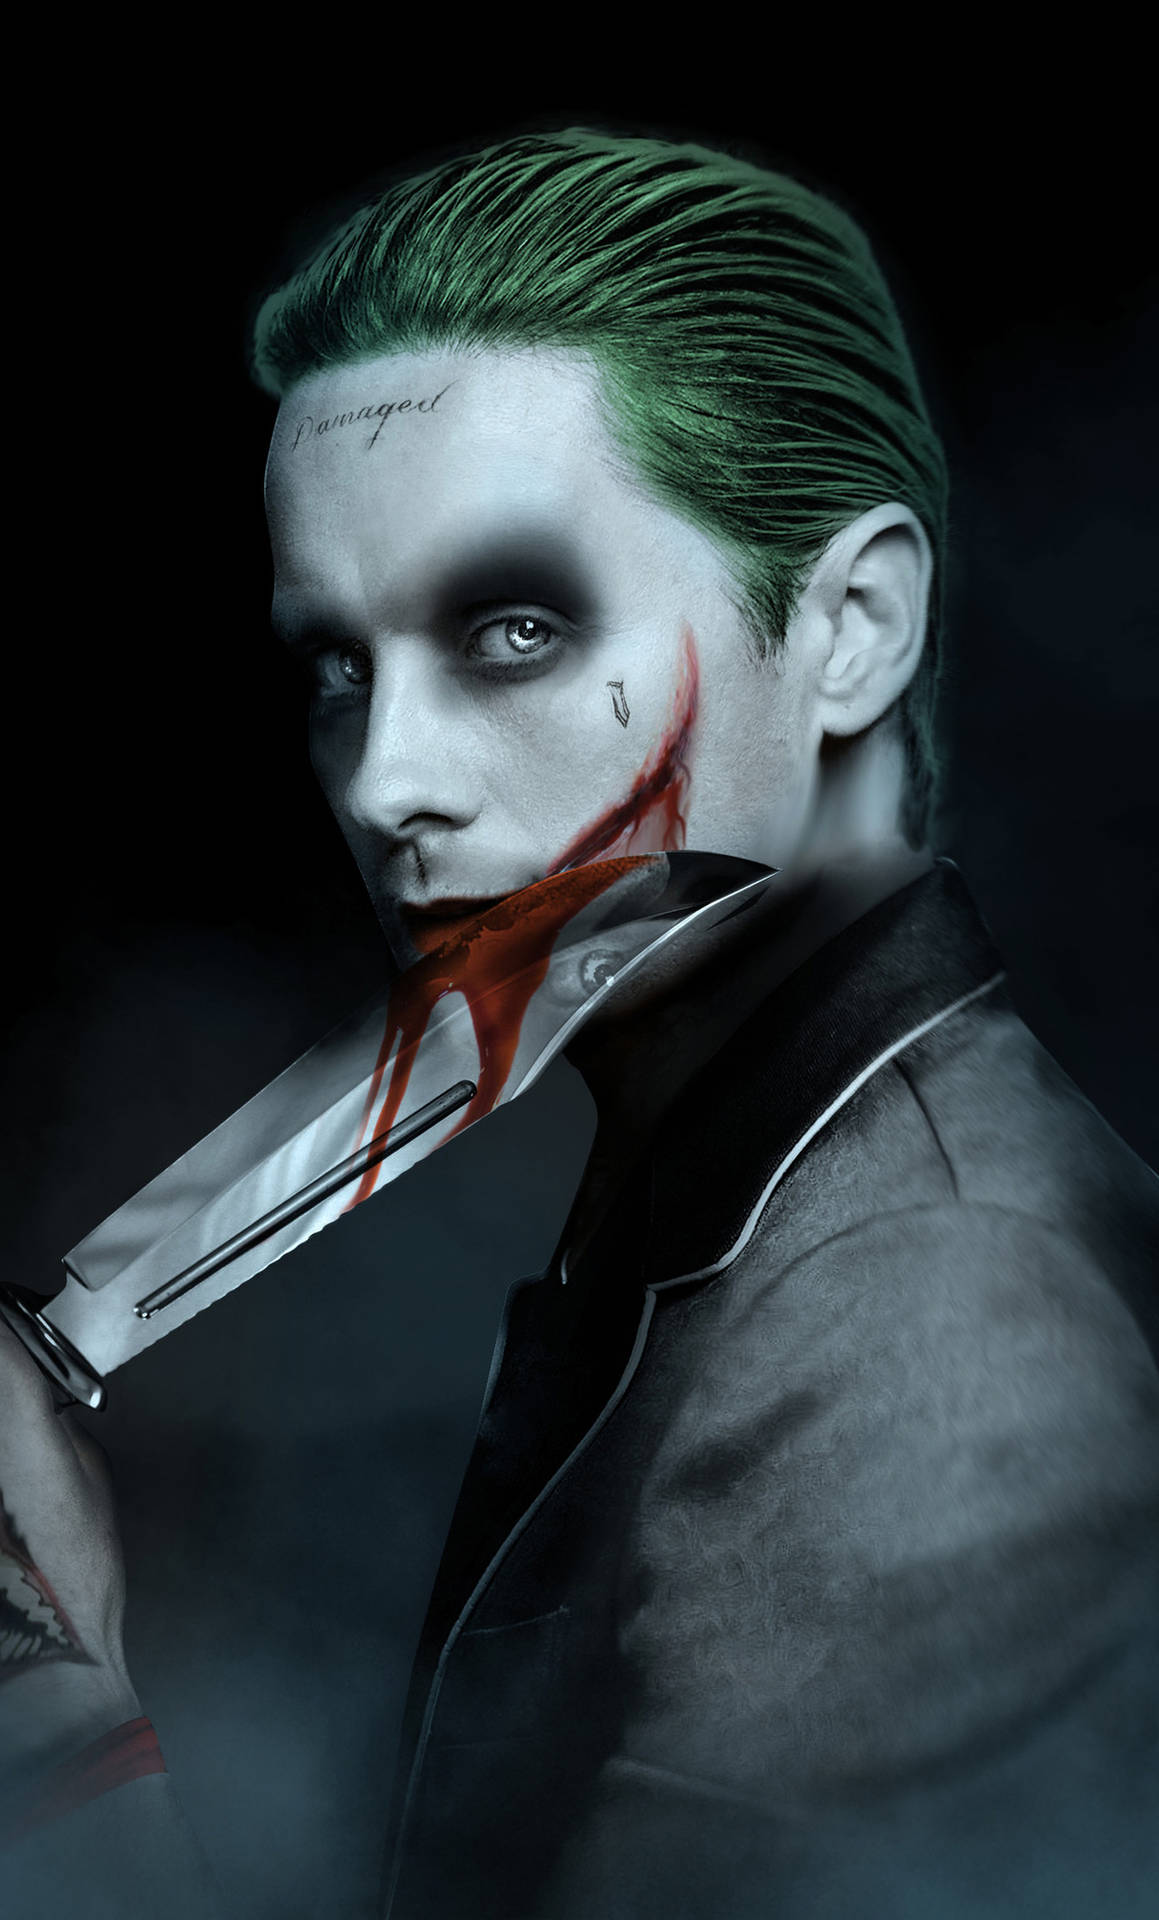 Joker Telefon Jared Leto Wallpaper